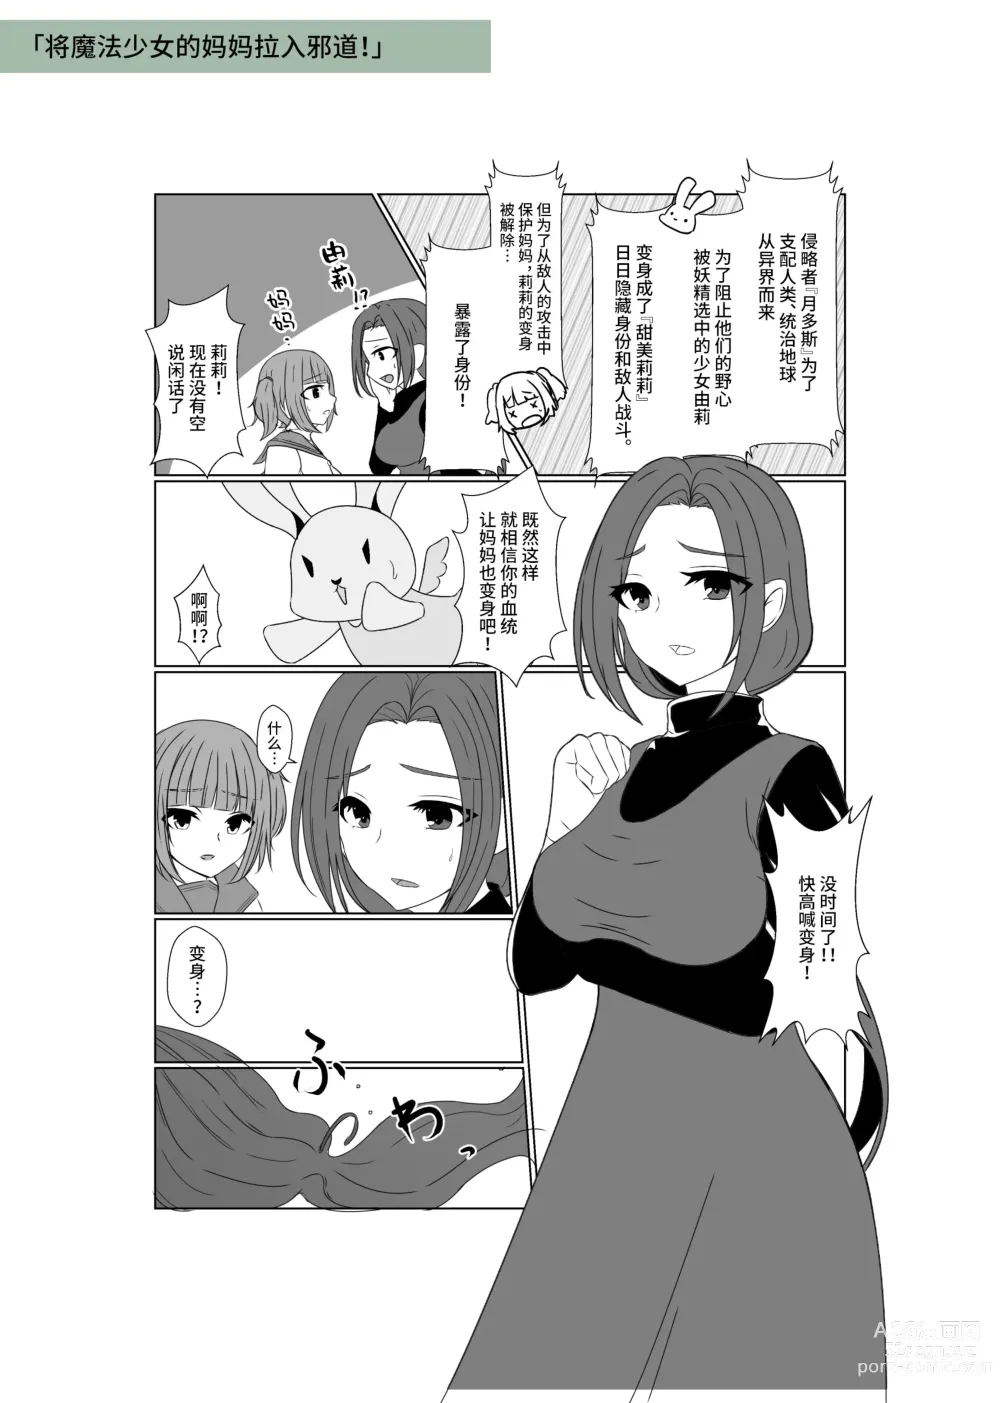 Page 61 of doujinshi Aku no Hana Vol.3 Skeb+α Matome